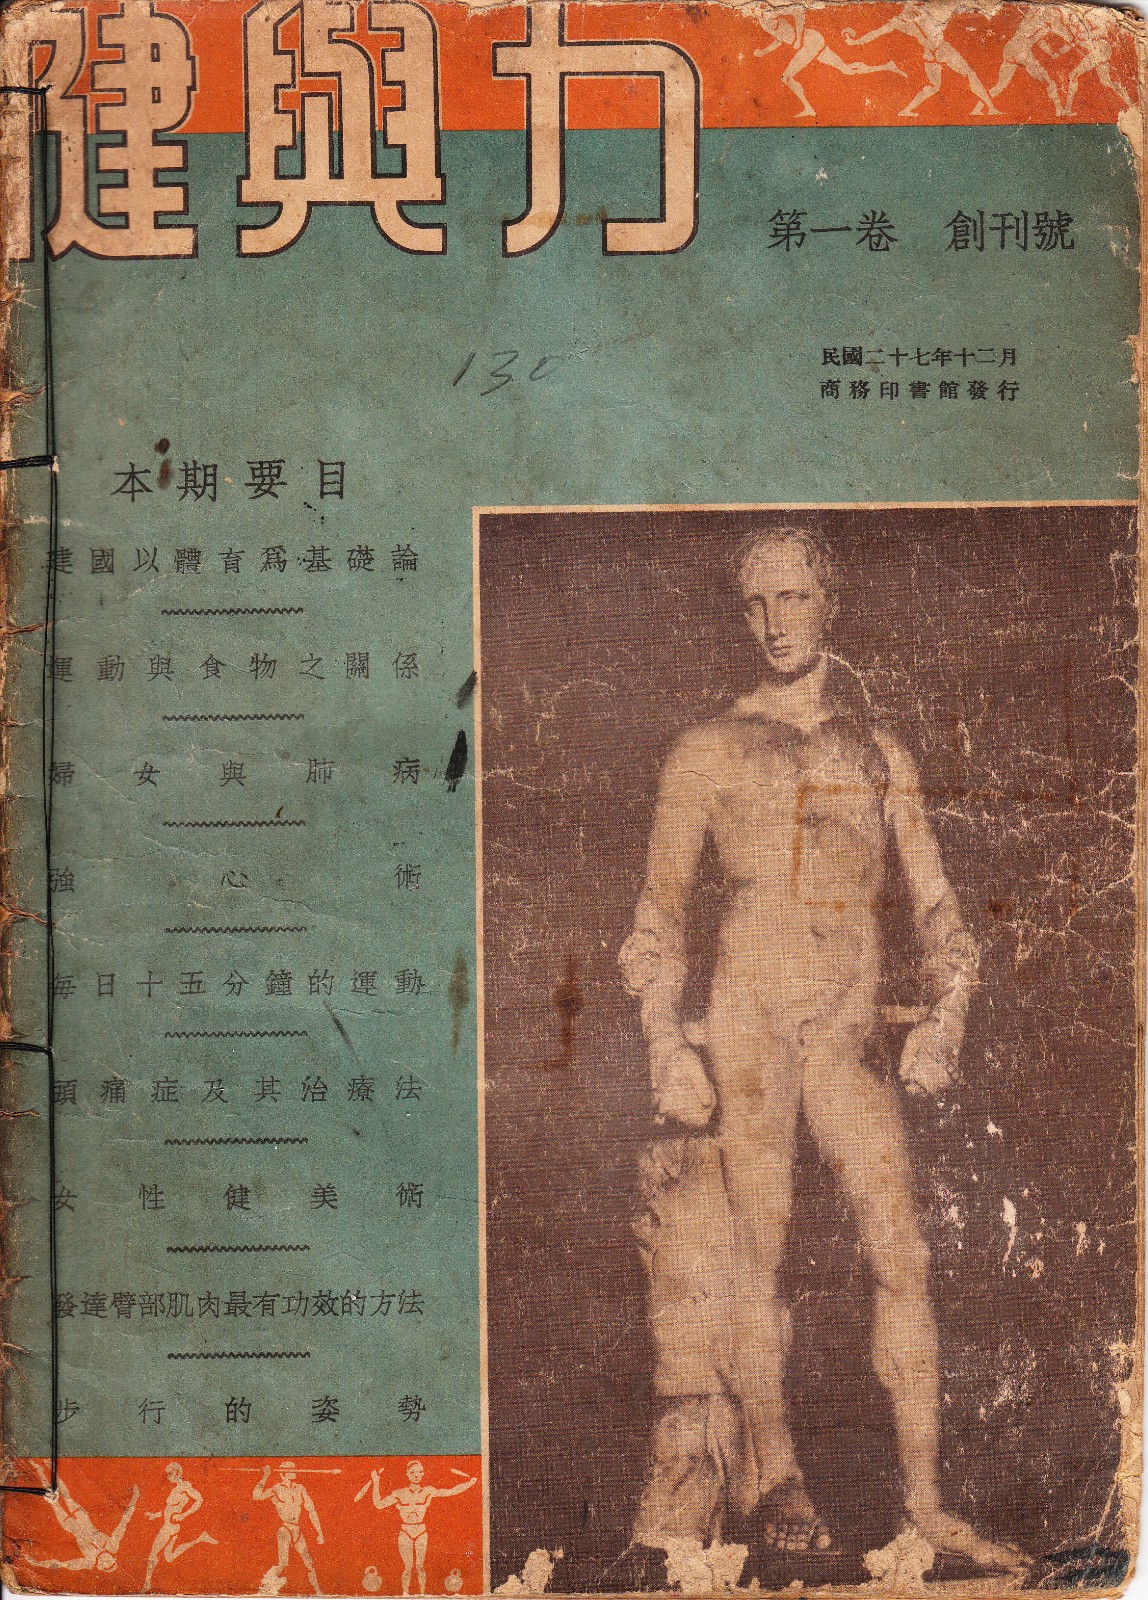 1938《健与力》创刊号